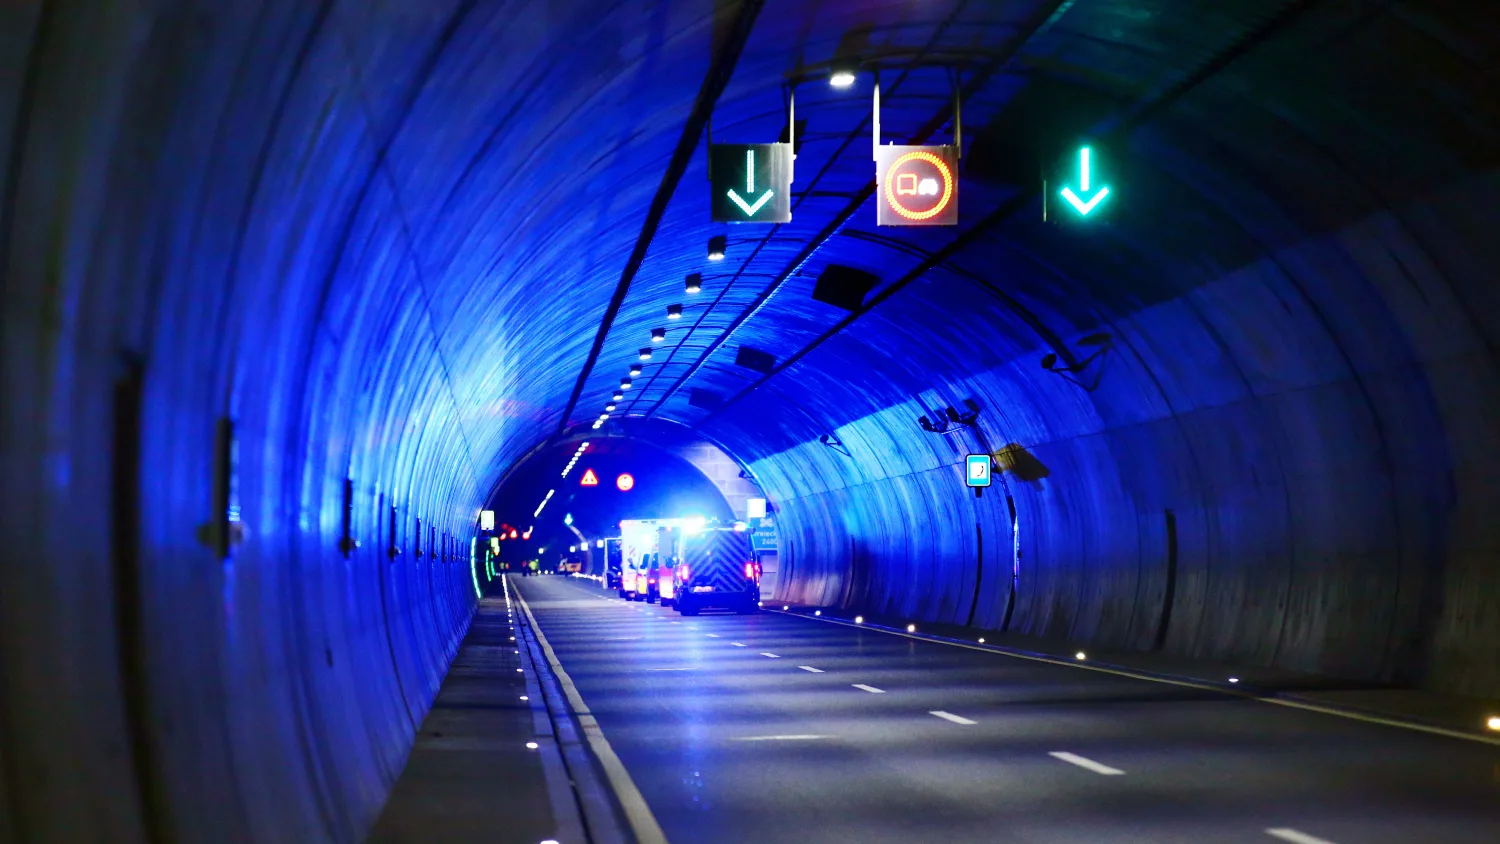 Stau, Unfall oder Feuer im Tunnel: So handeln Sie richtig